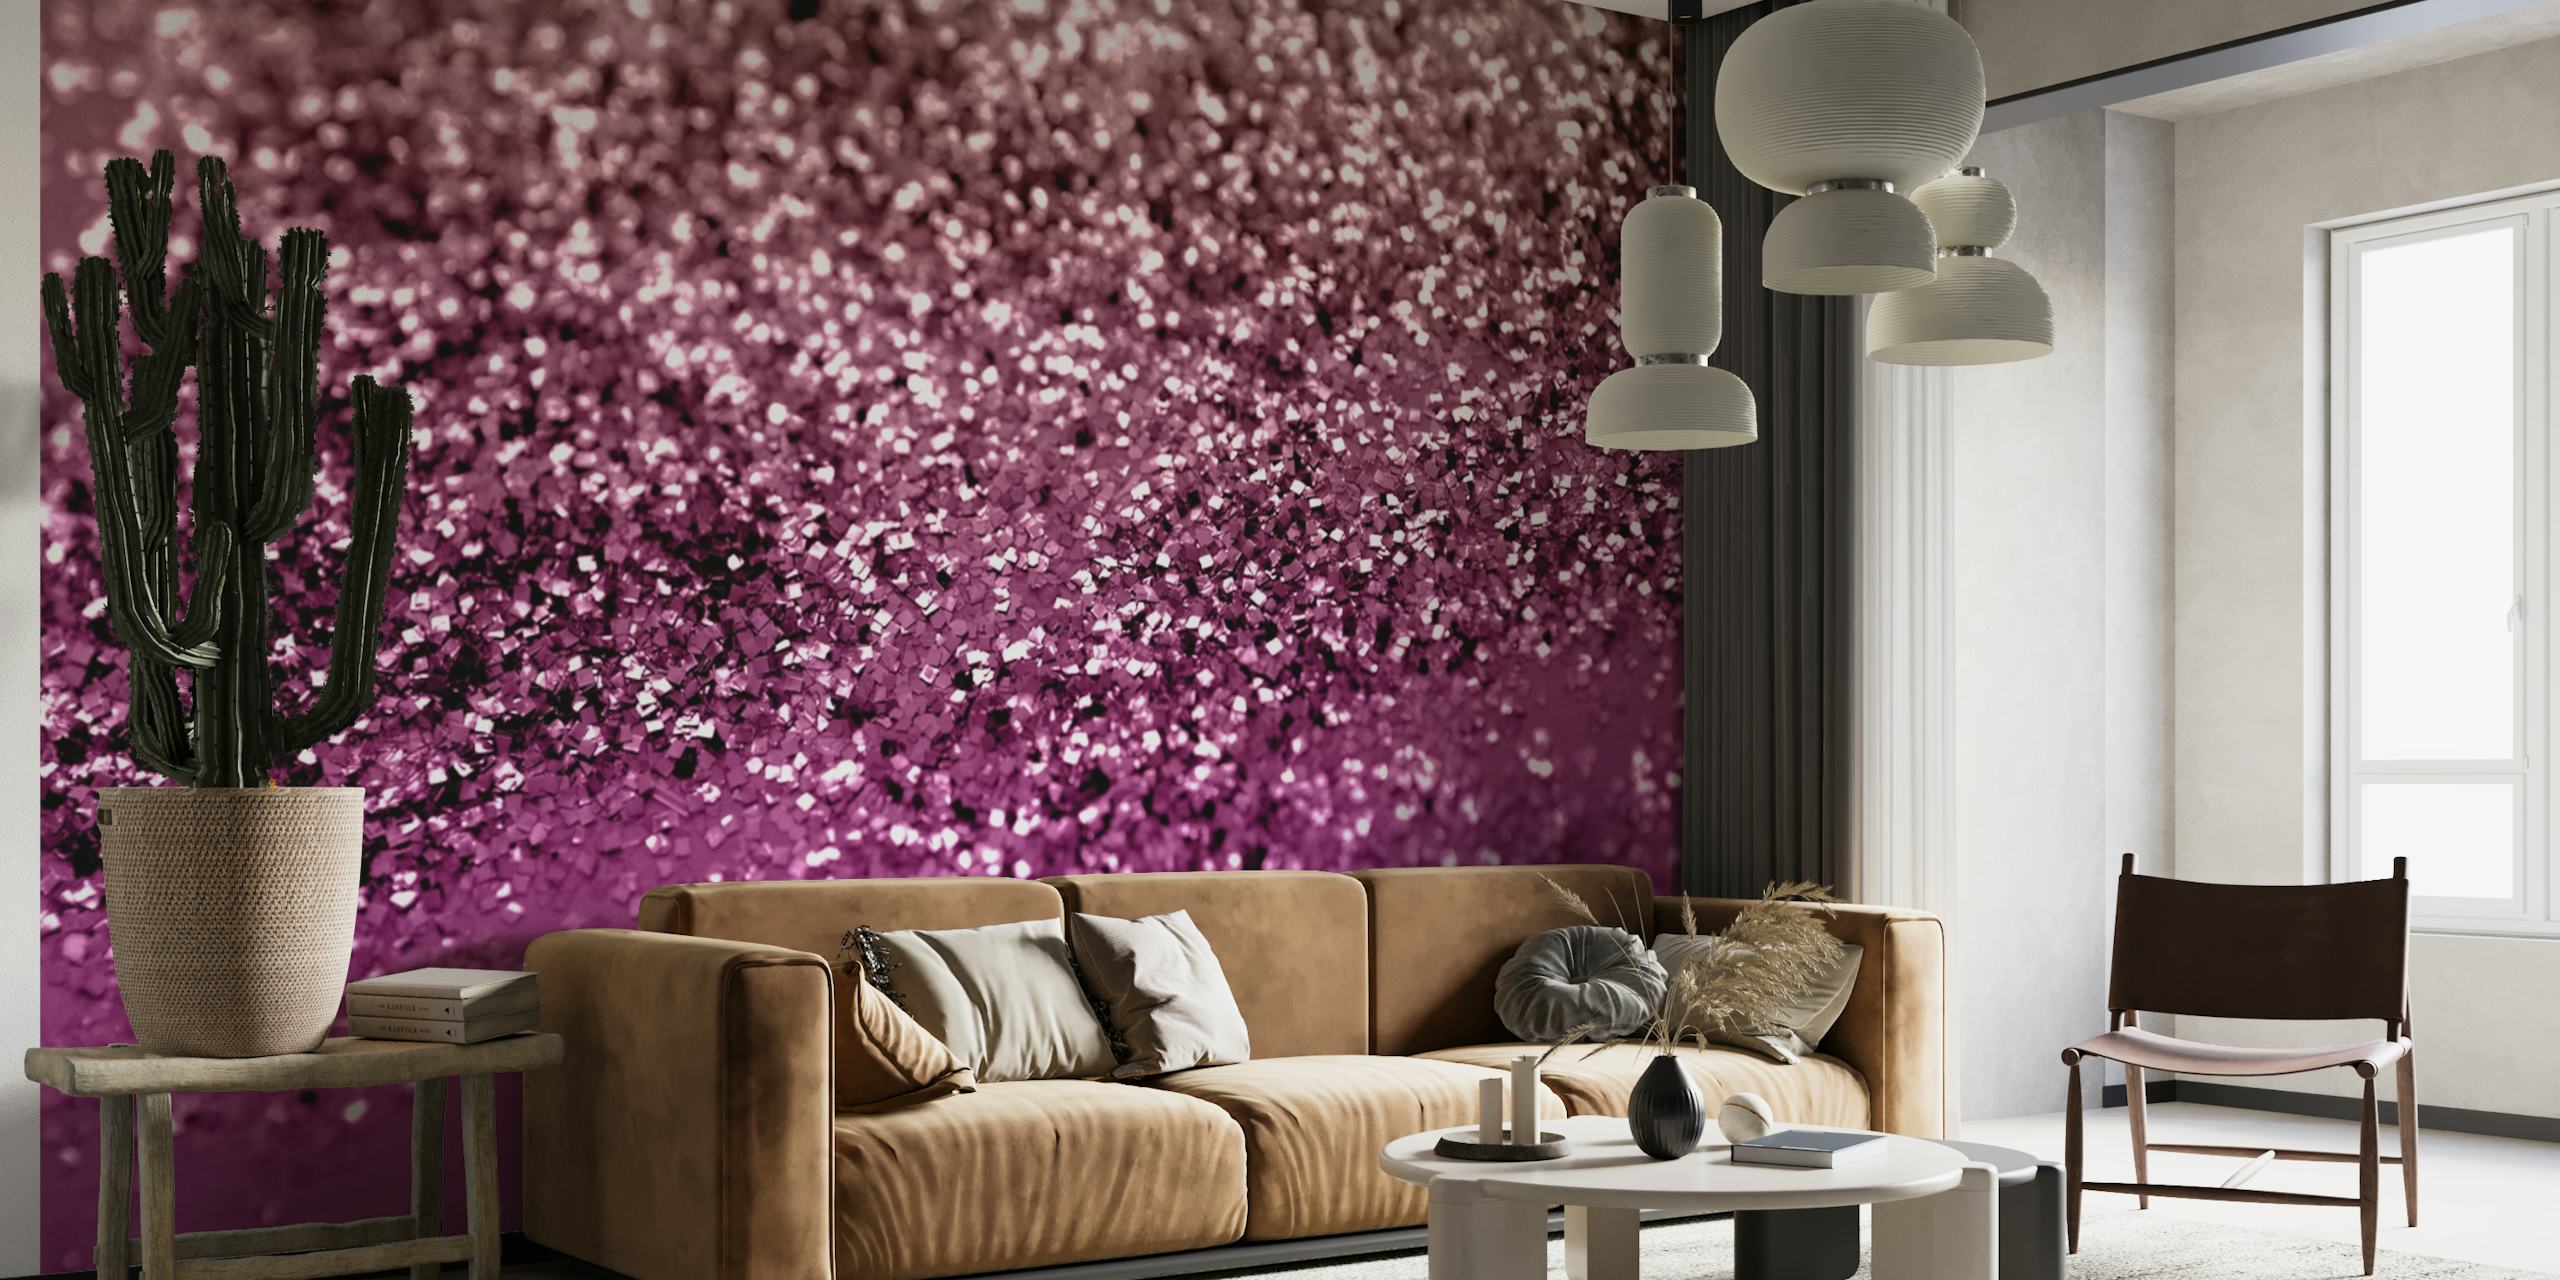 Fotomural vinílico de parede com textura de brilho de amora cintilante